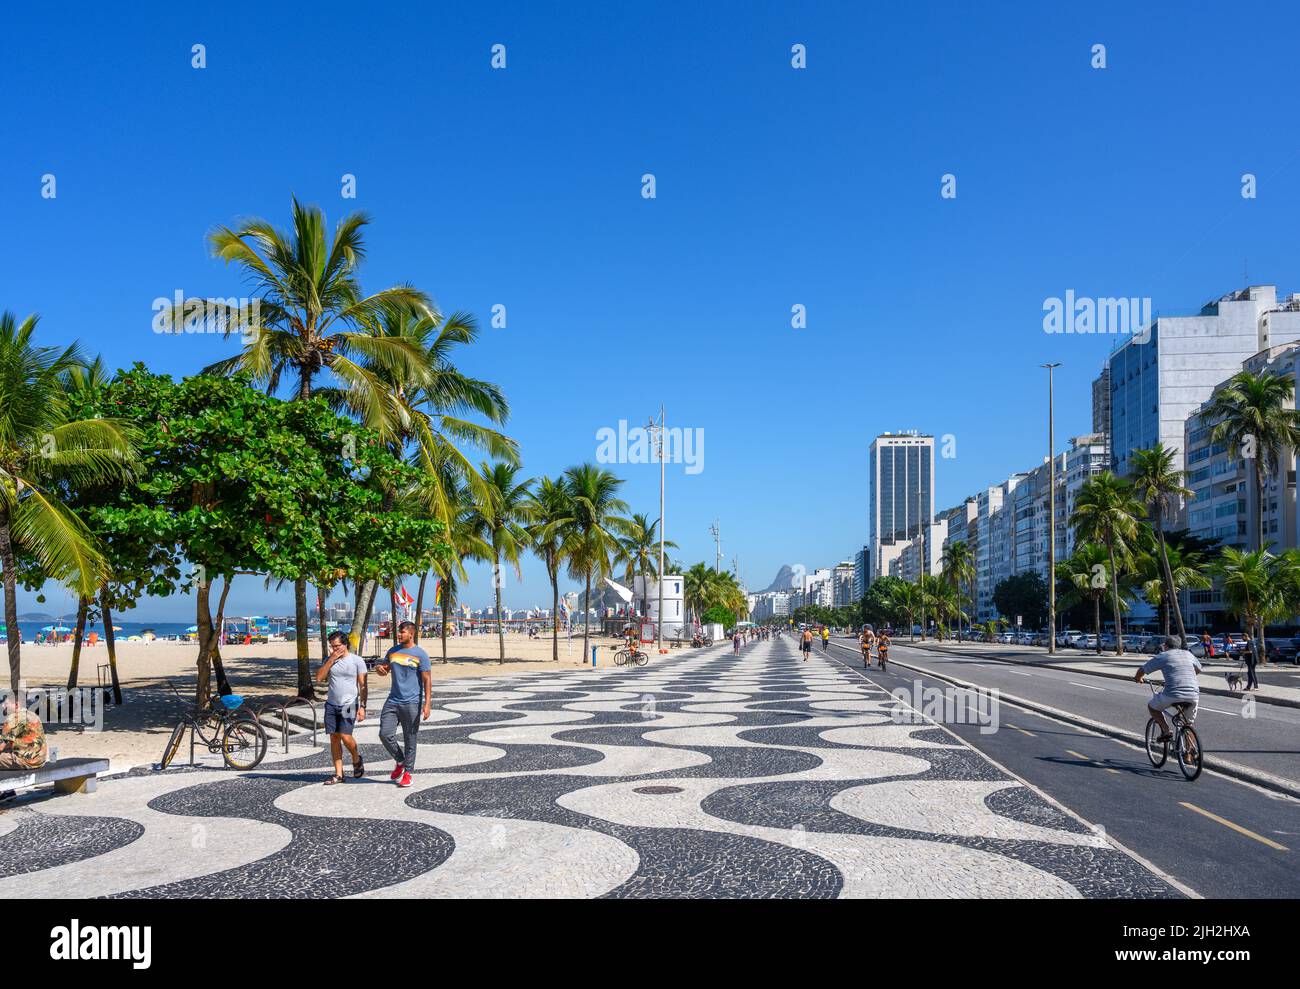 Seafront promenade, Avenida Atlantica, Copacabana Beach, Copacabana, Rio de Janeiro, Brazil Stock Photo